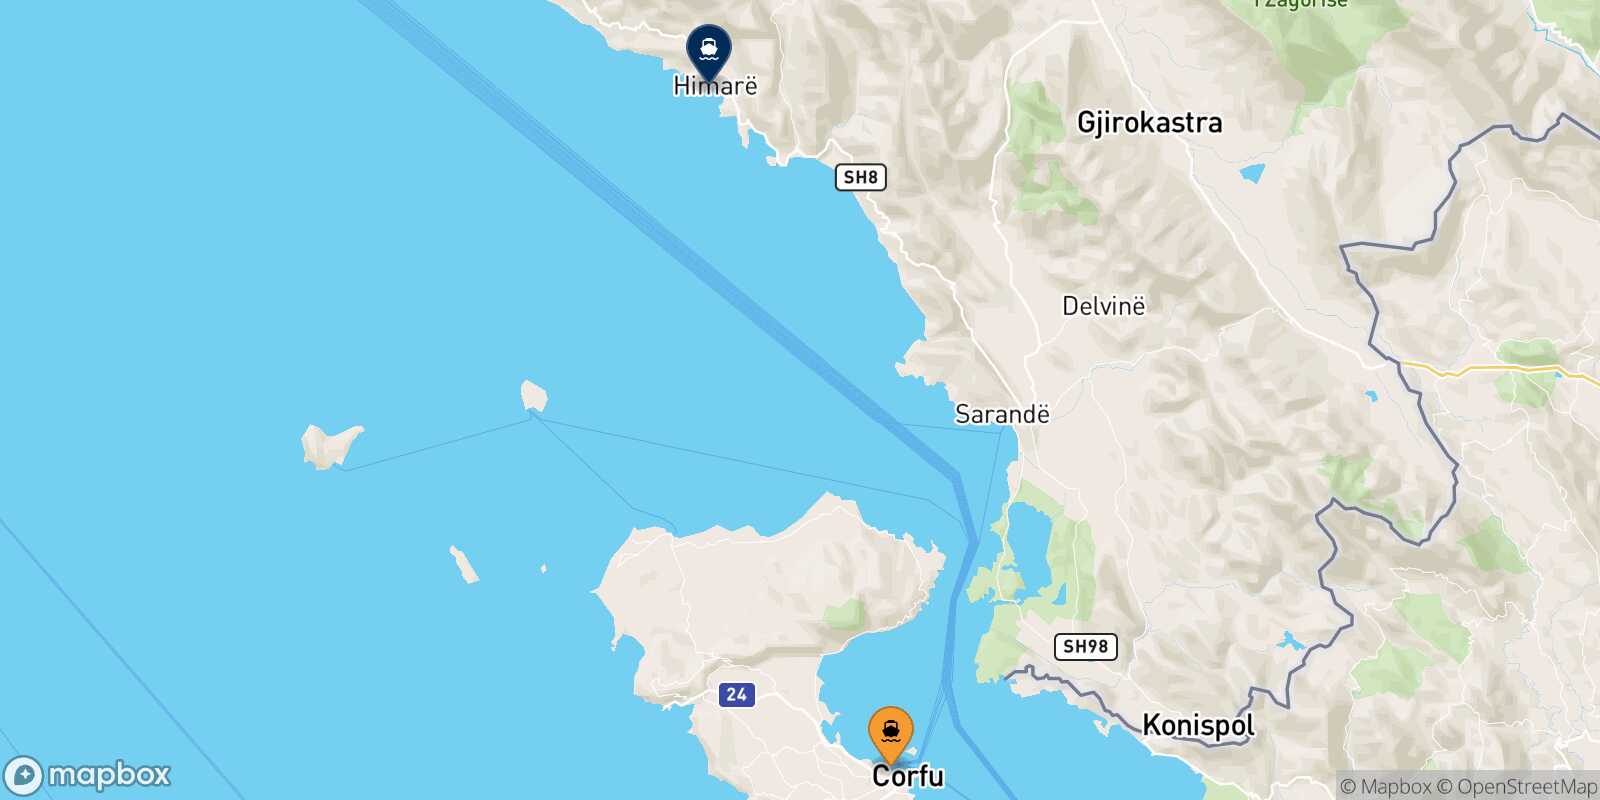 Mappa dei porti collegati con  Himare